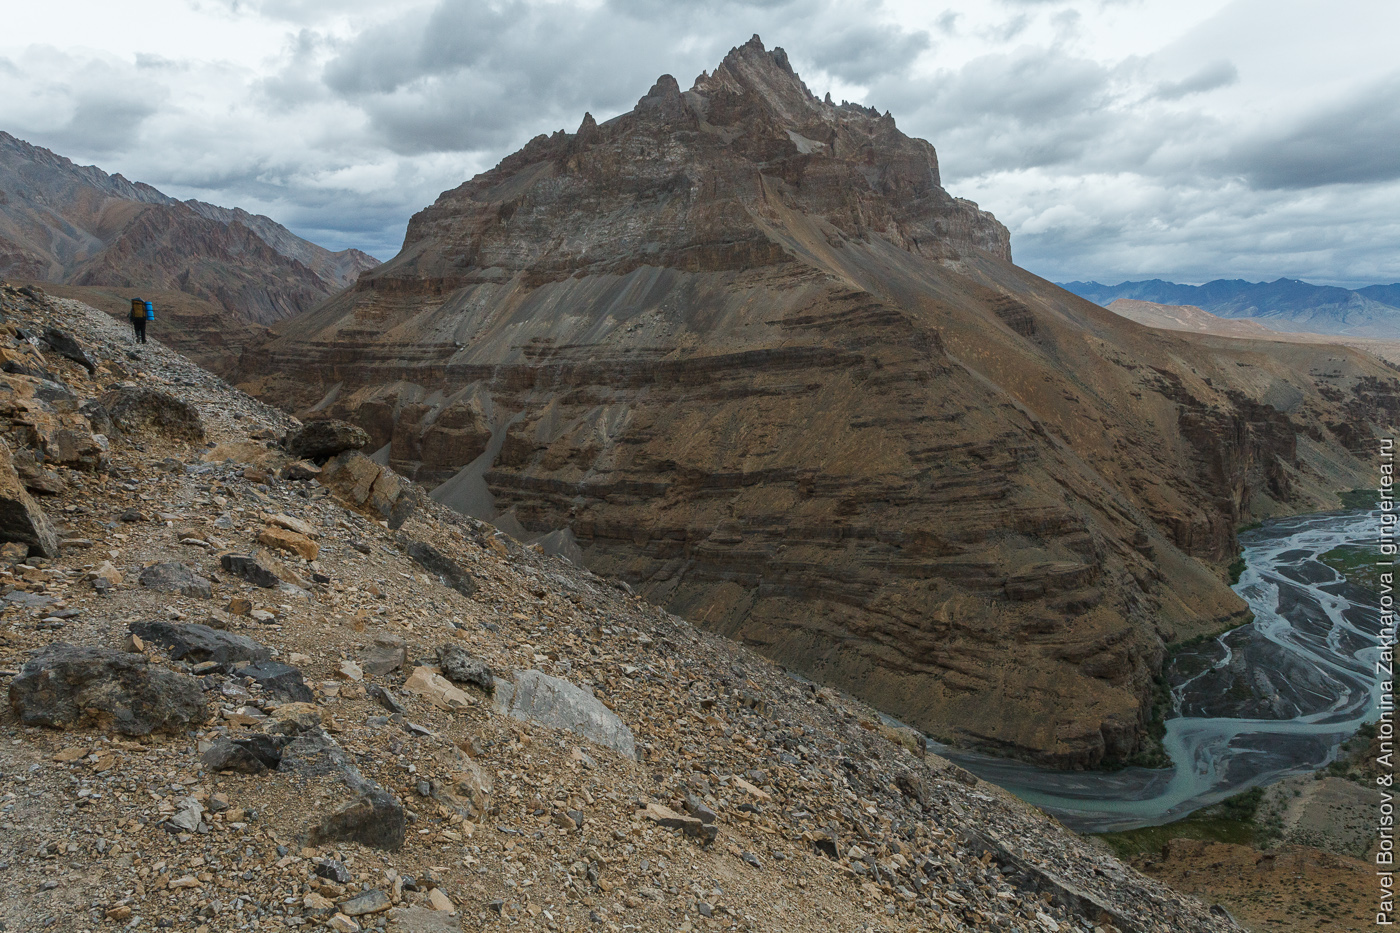 Горы как пирожные. «Детский» поход в Ладакх и индийские Гималаи (часть 3)